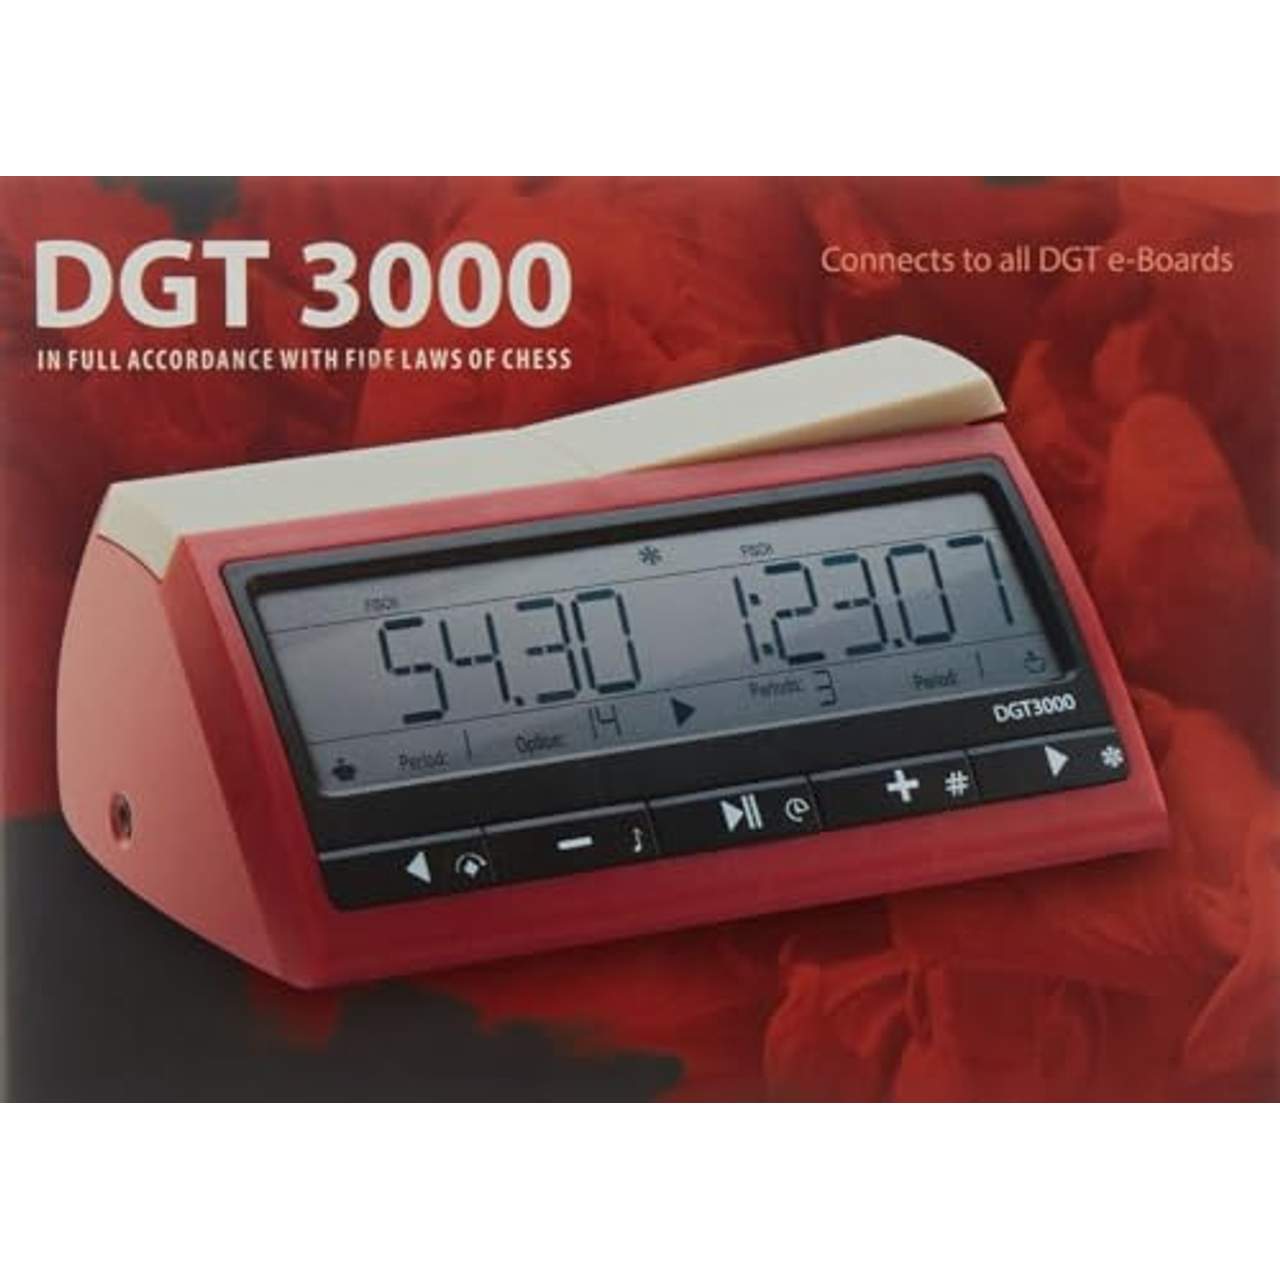 DGT-3000 